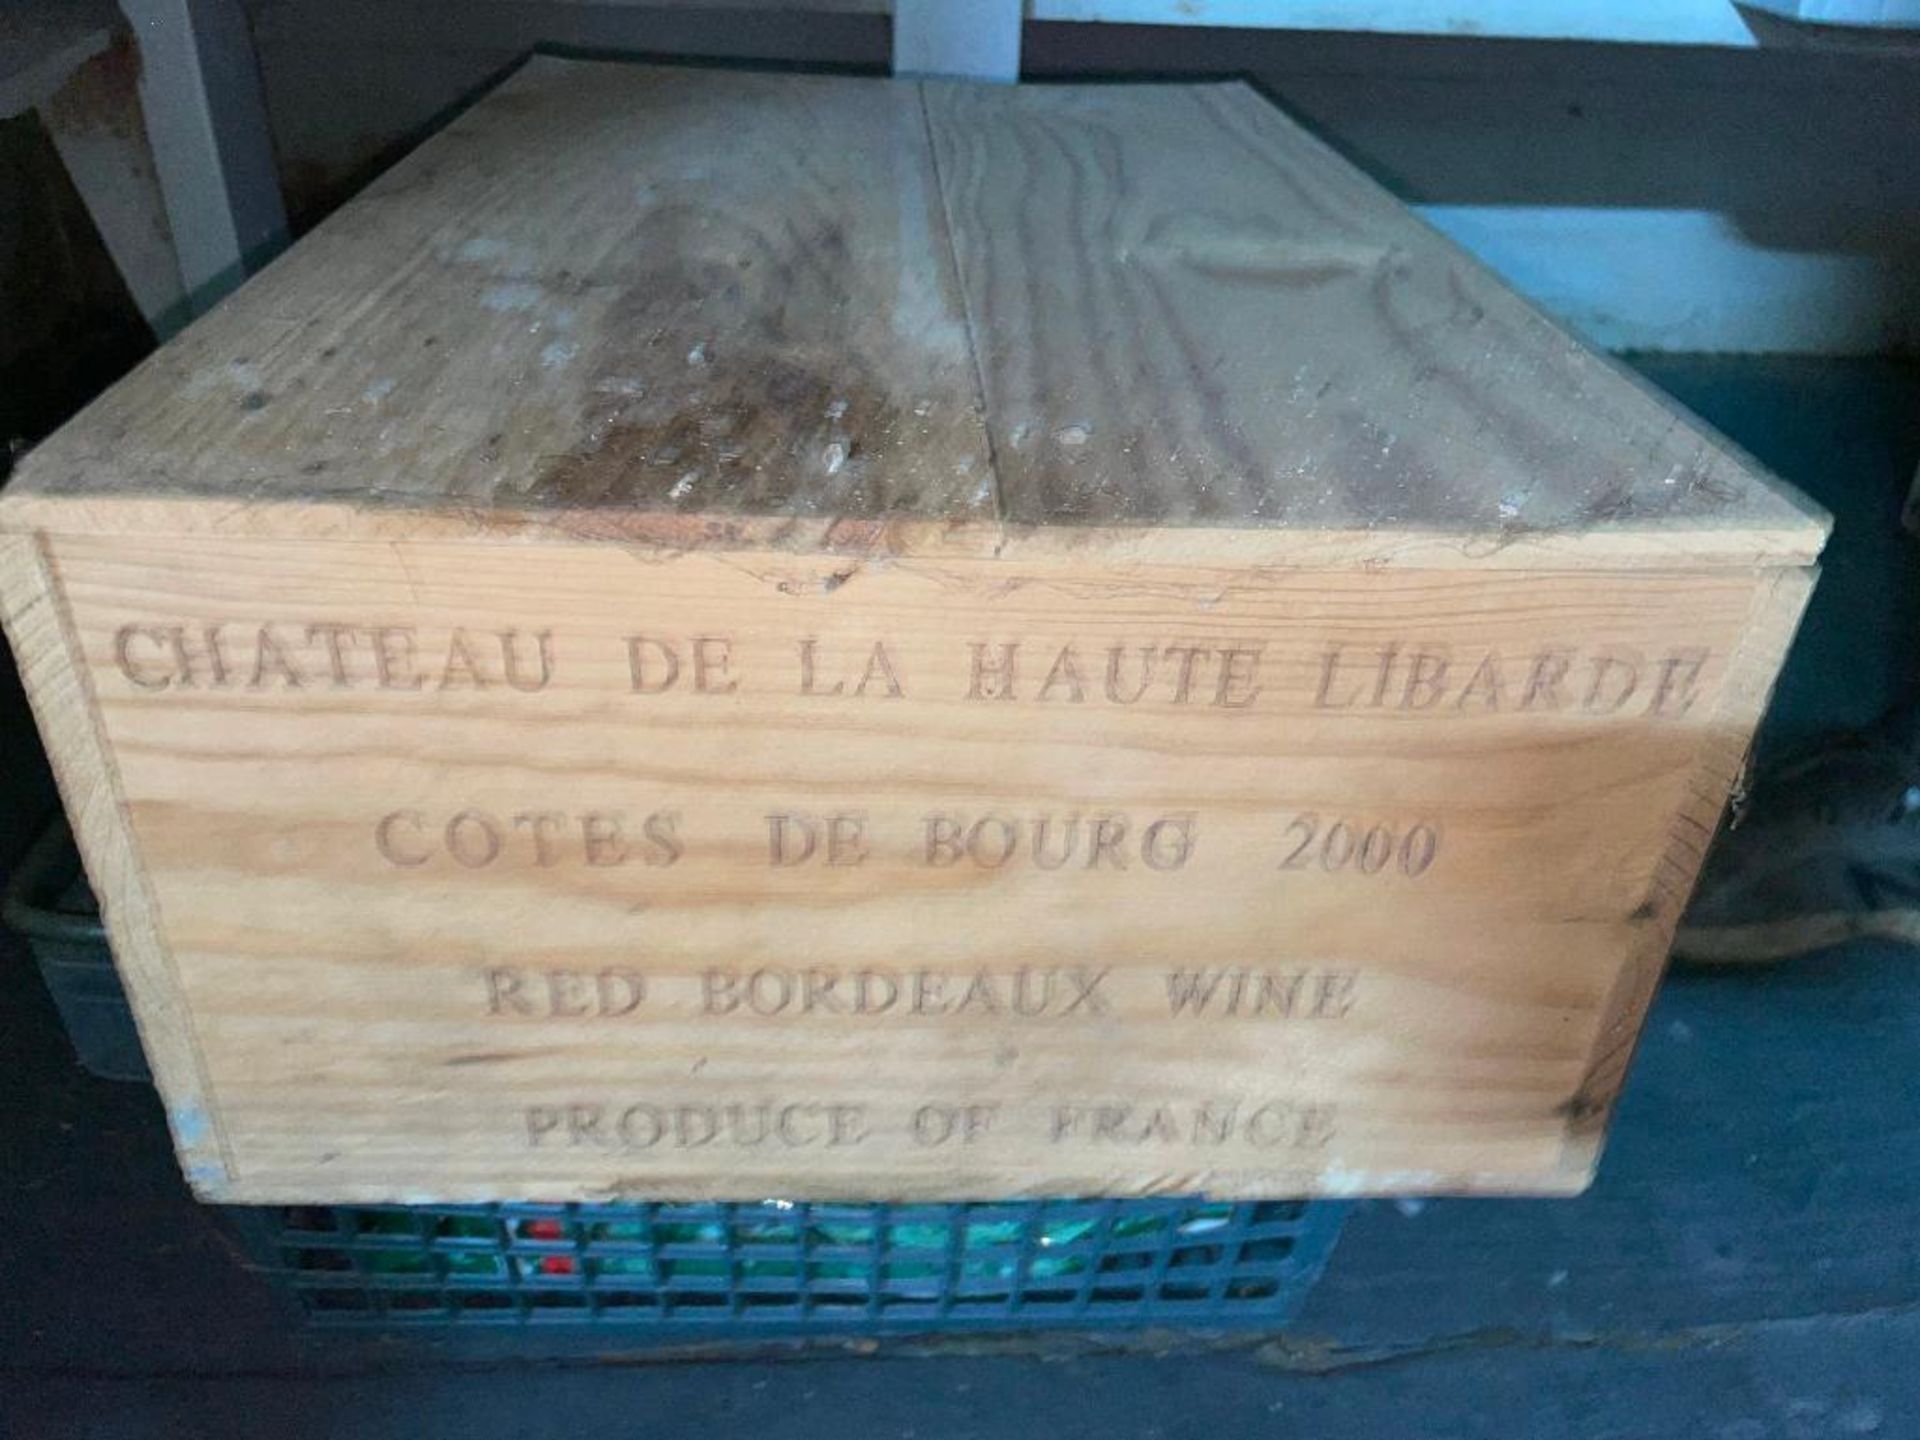 DESCRIPTION: (12) 750 ML BOTTLES OF CHATEAU DE LA HAUTE LIBARDE COTE DE BOURG 2000 ADDITIONAL INFORM - Image 2 of 3